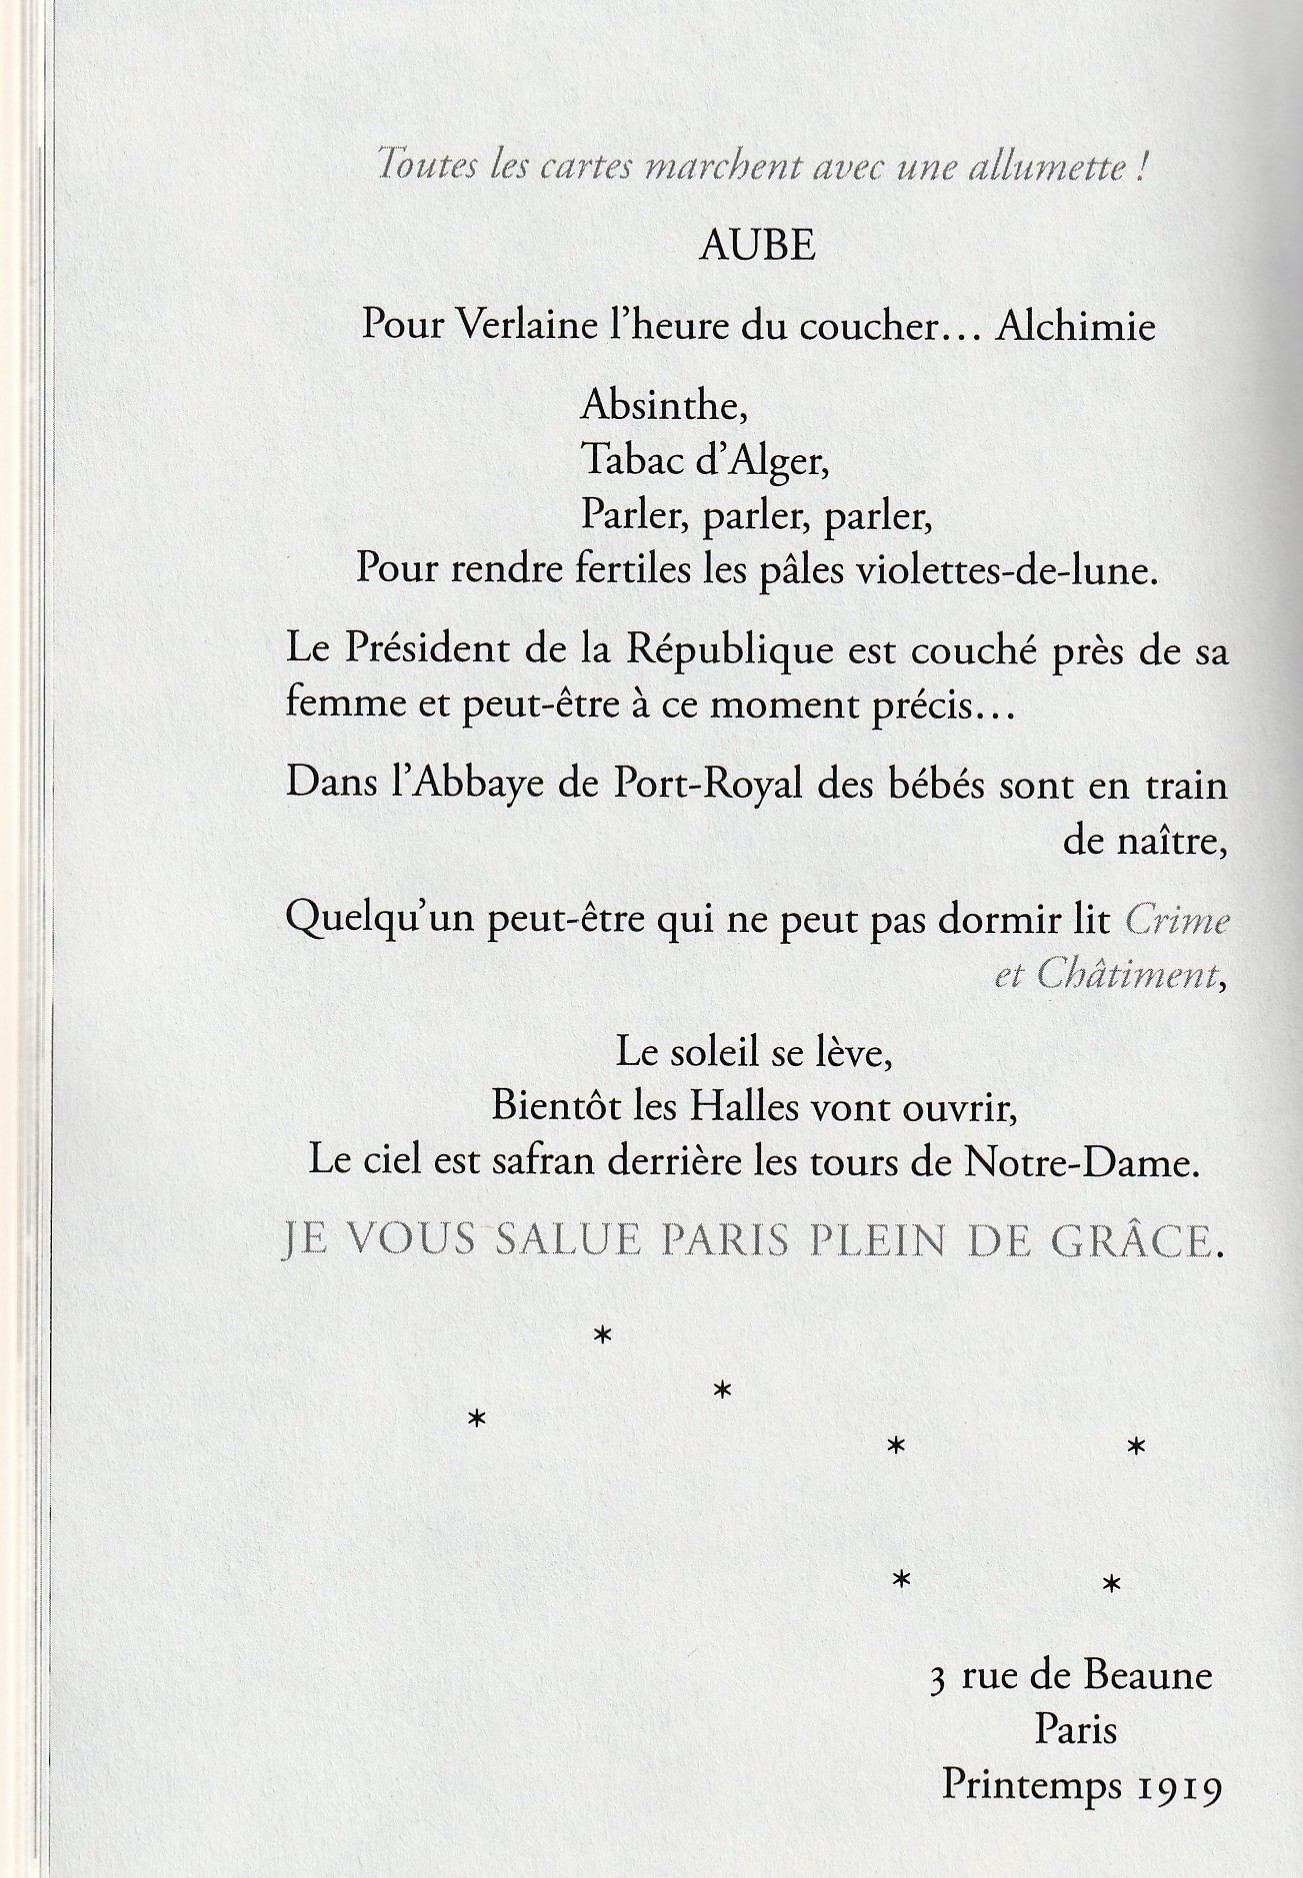 La vie des vers de farine (par Chloé B) - Le blog de ecole-de -thoraise.over-blog.com